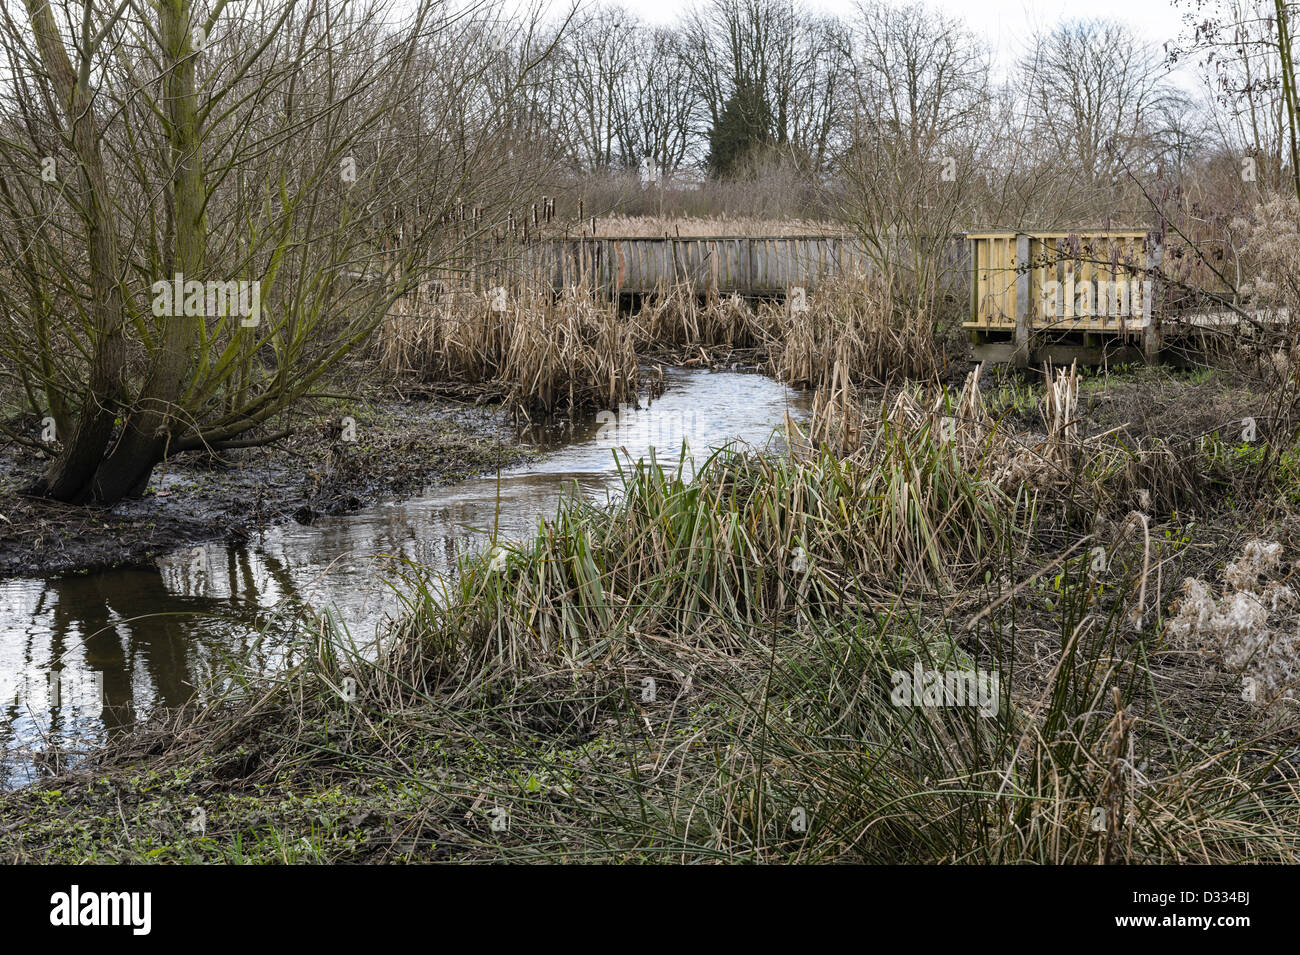 Gemischte Vegetation Einpflanzen, bypass-Kanal und Flussaue. Fluß Quaggy Flut Linderung Schema, Sutcliffe Park, London, UK. Stockfoto